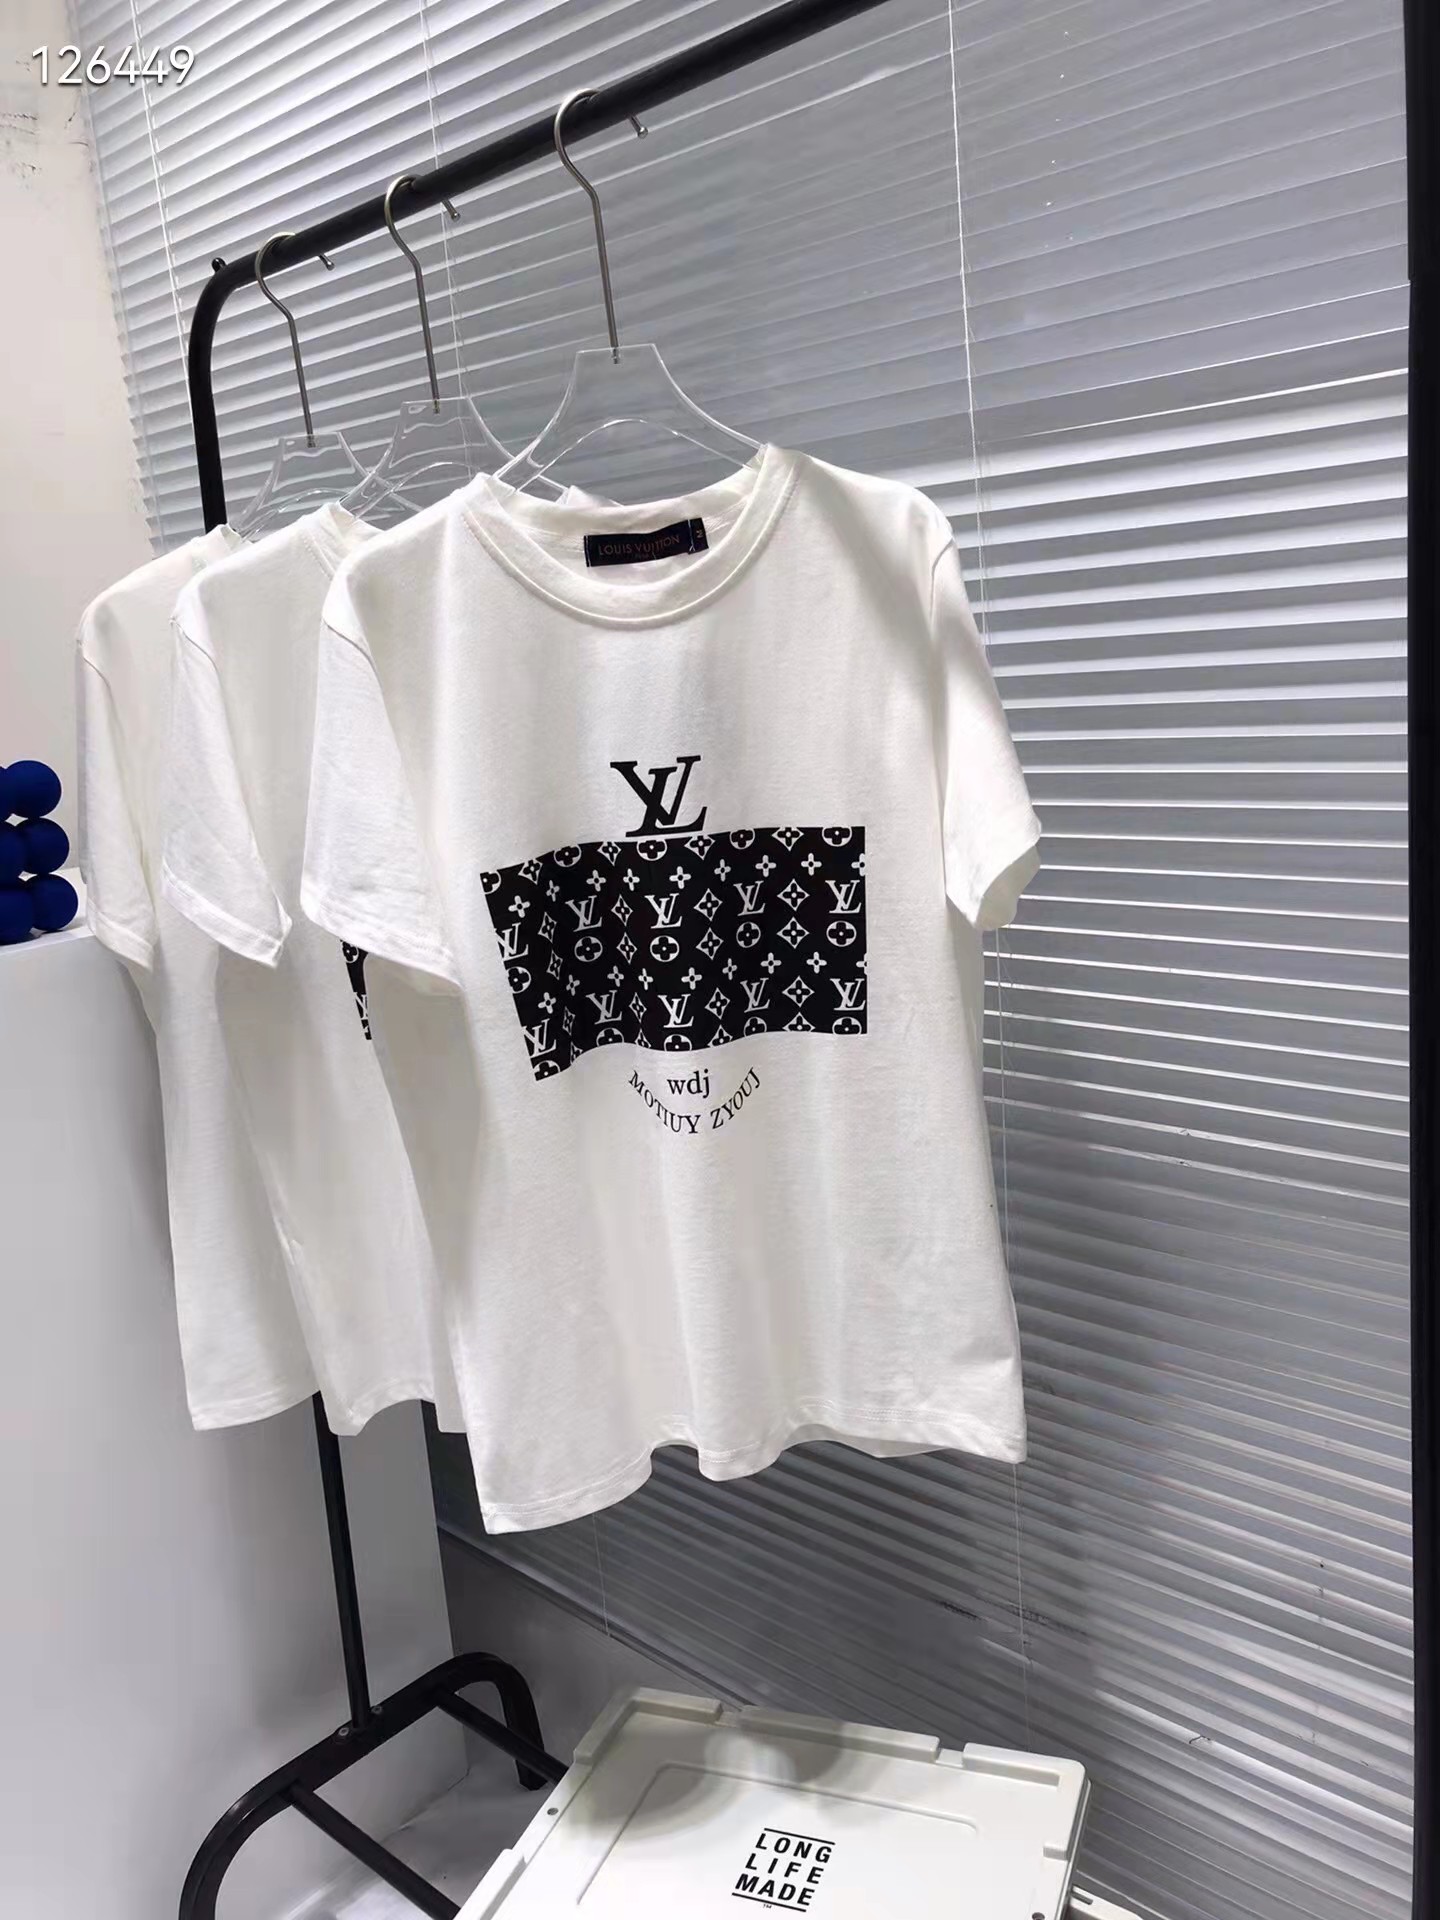 ヴィトン Tシャツ 半袖 レディース メンズ ティーシャツ モノグラム LV ロゴTシャツ カットソー ルイヴィトン tシャツ ホワイト ブラック  ペアルック カジュアル